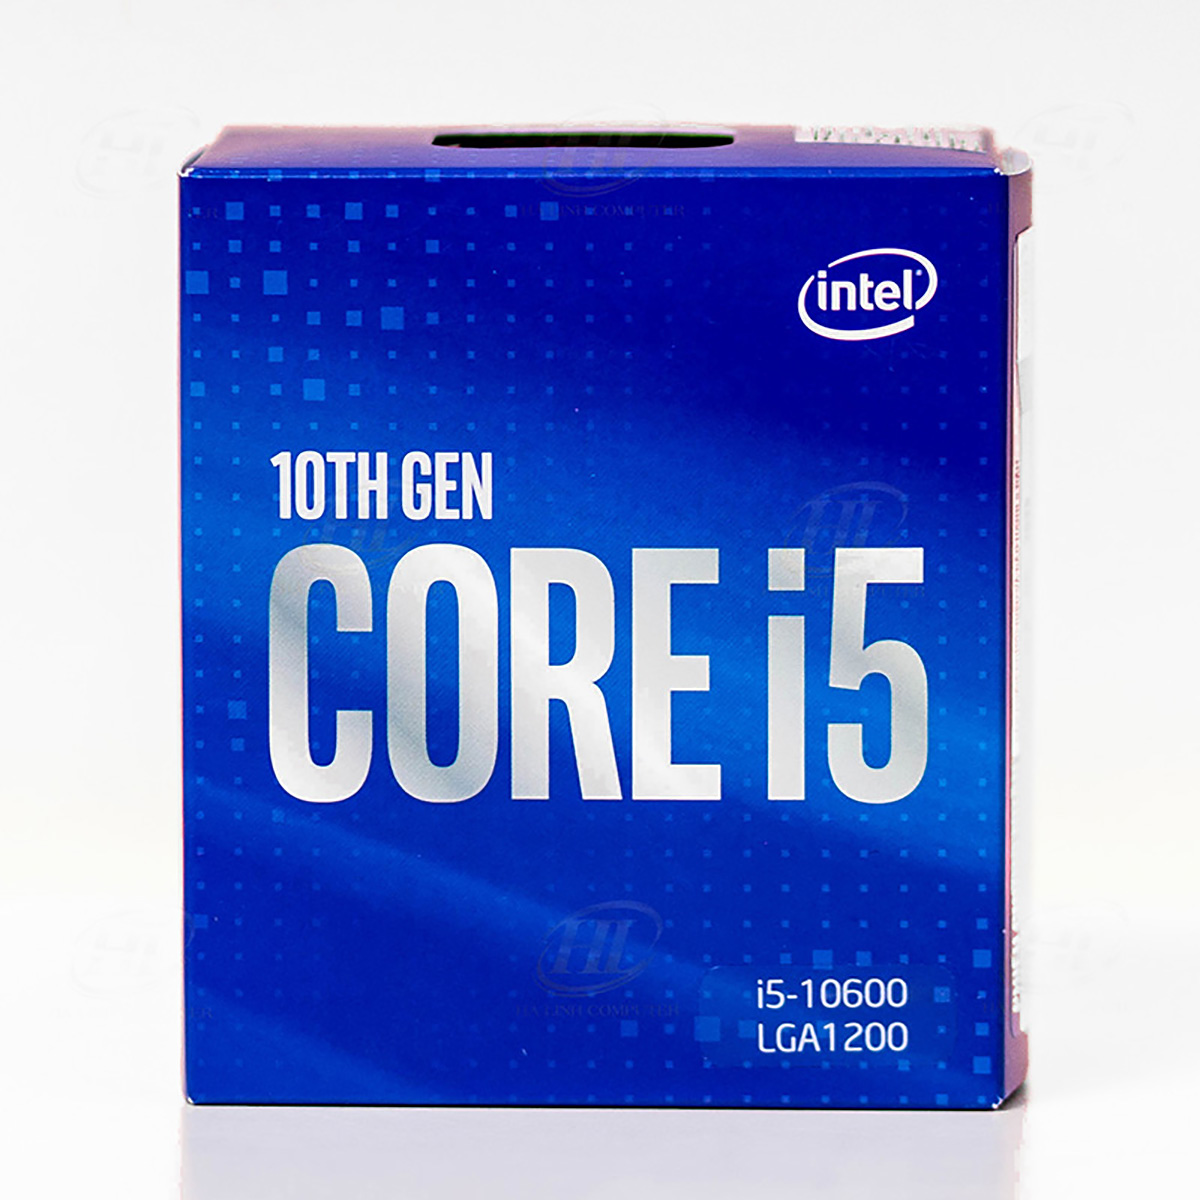 CPU Intel Core i5 10400 Tray (2.9GHz turbo up to 4.3GHz, 6 nhân, 12 luồng, LGA 1200)